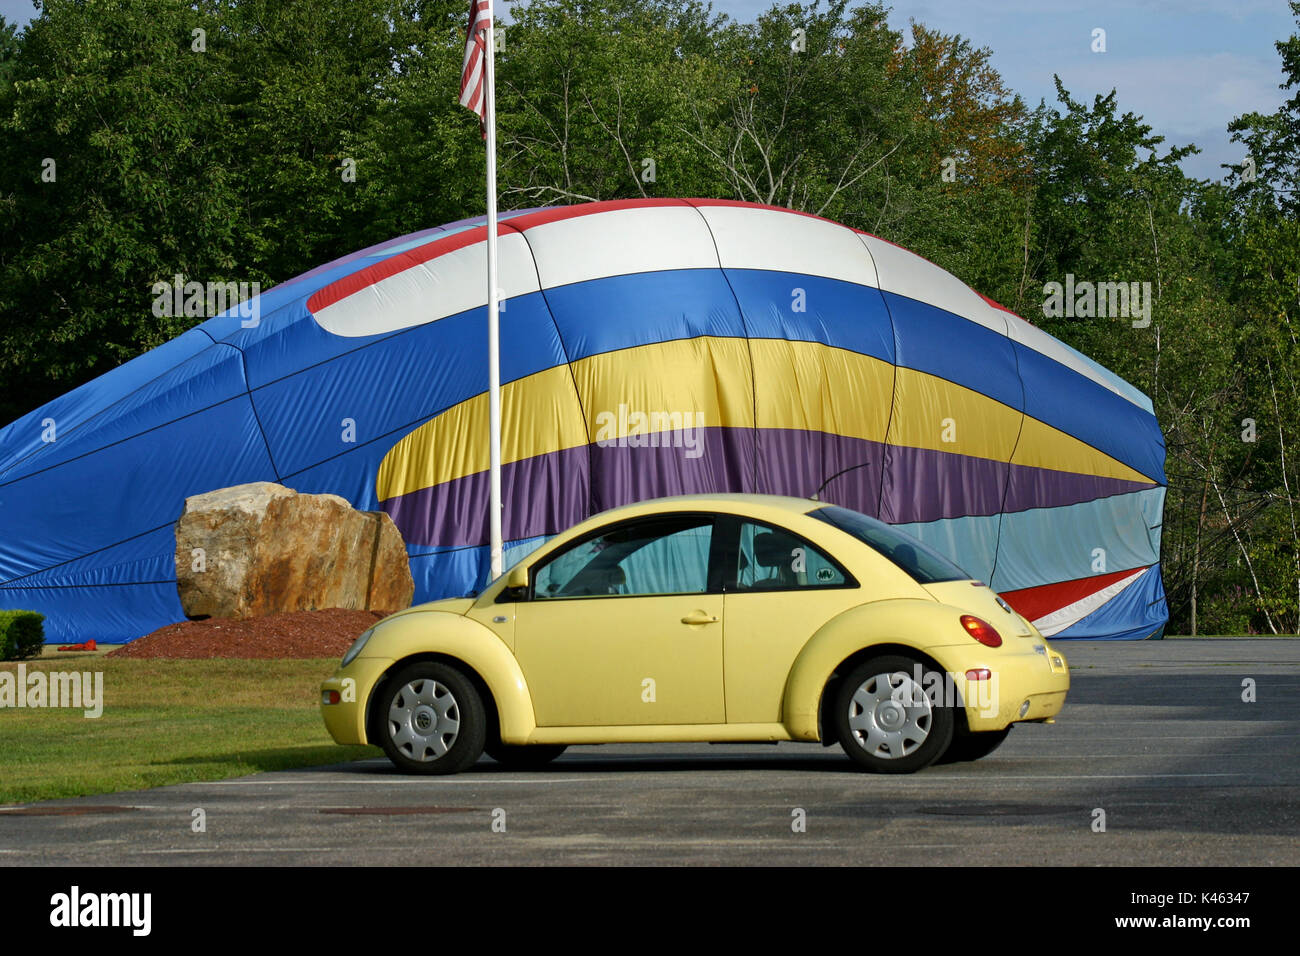 Ein gelber Volkswagen Beetle aus dem Jahr 1999 parkte vor einem teilweise aufgeblasenen, einstürzenden Heißluftballon Stockfoto